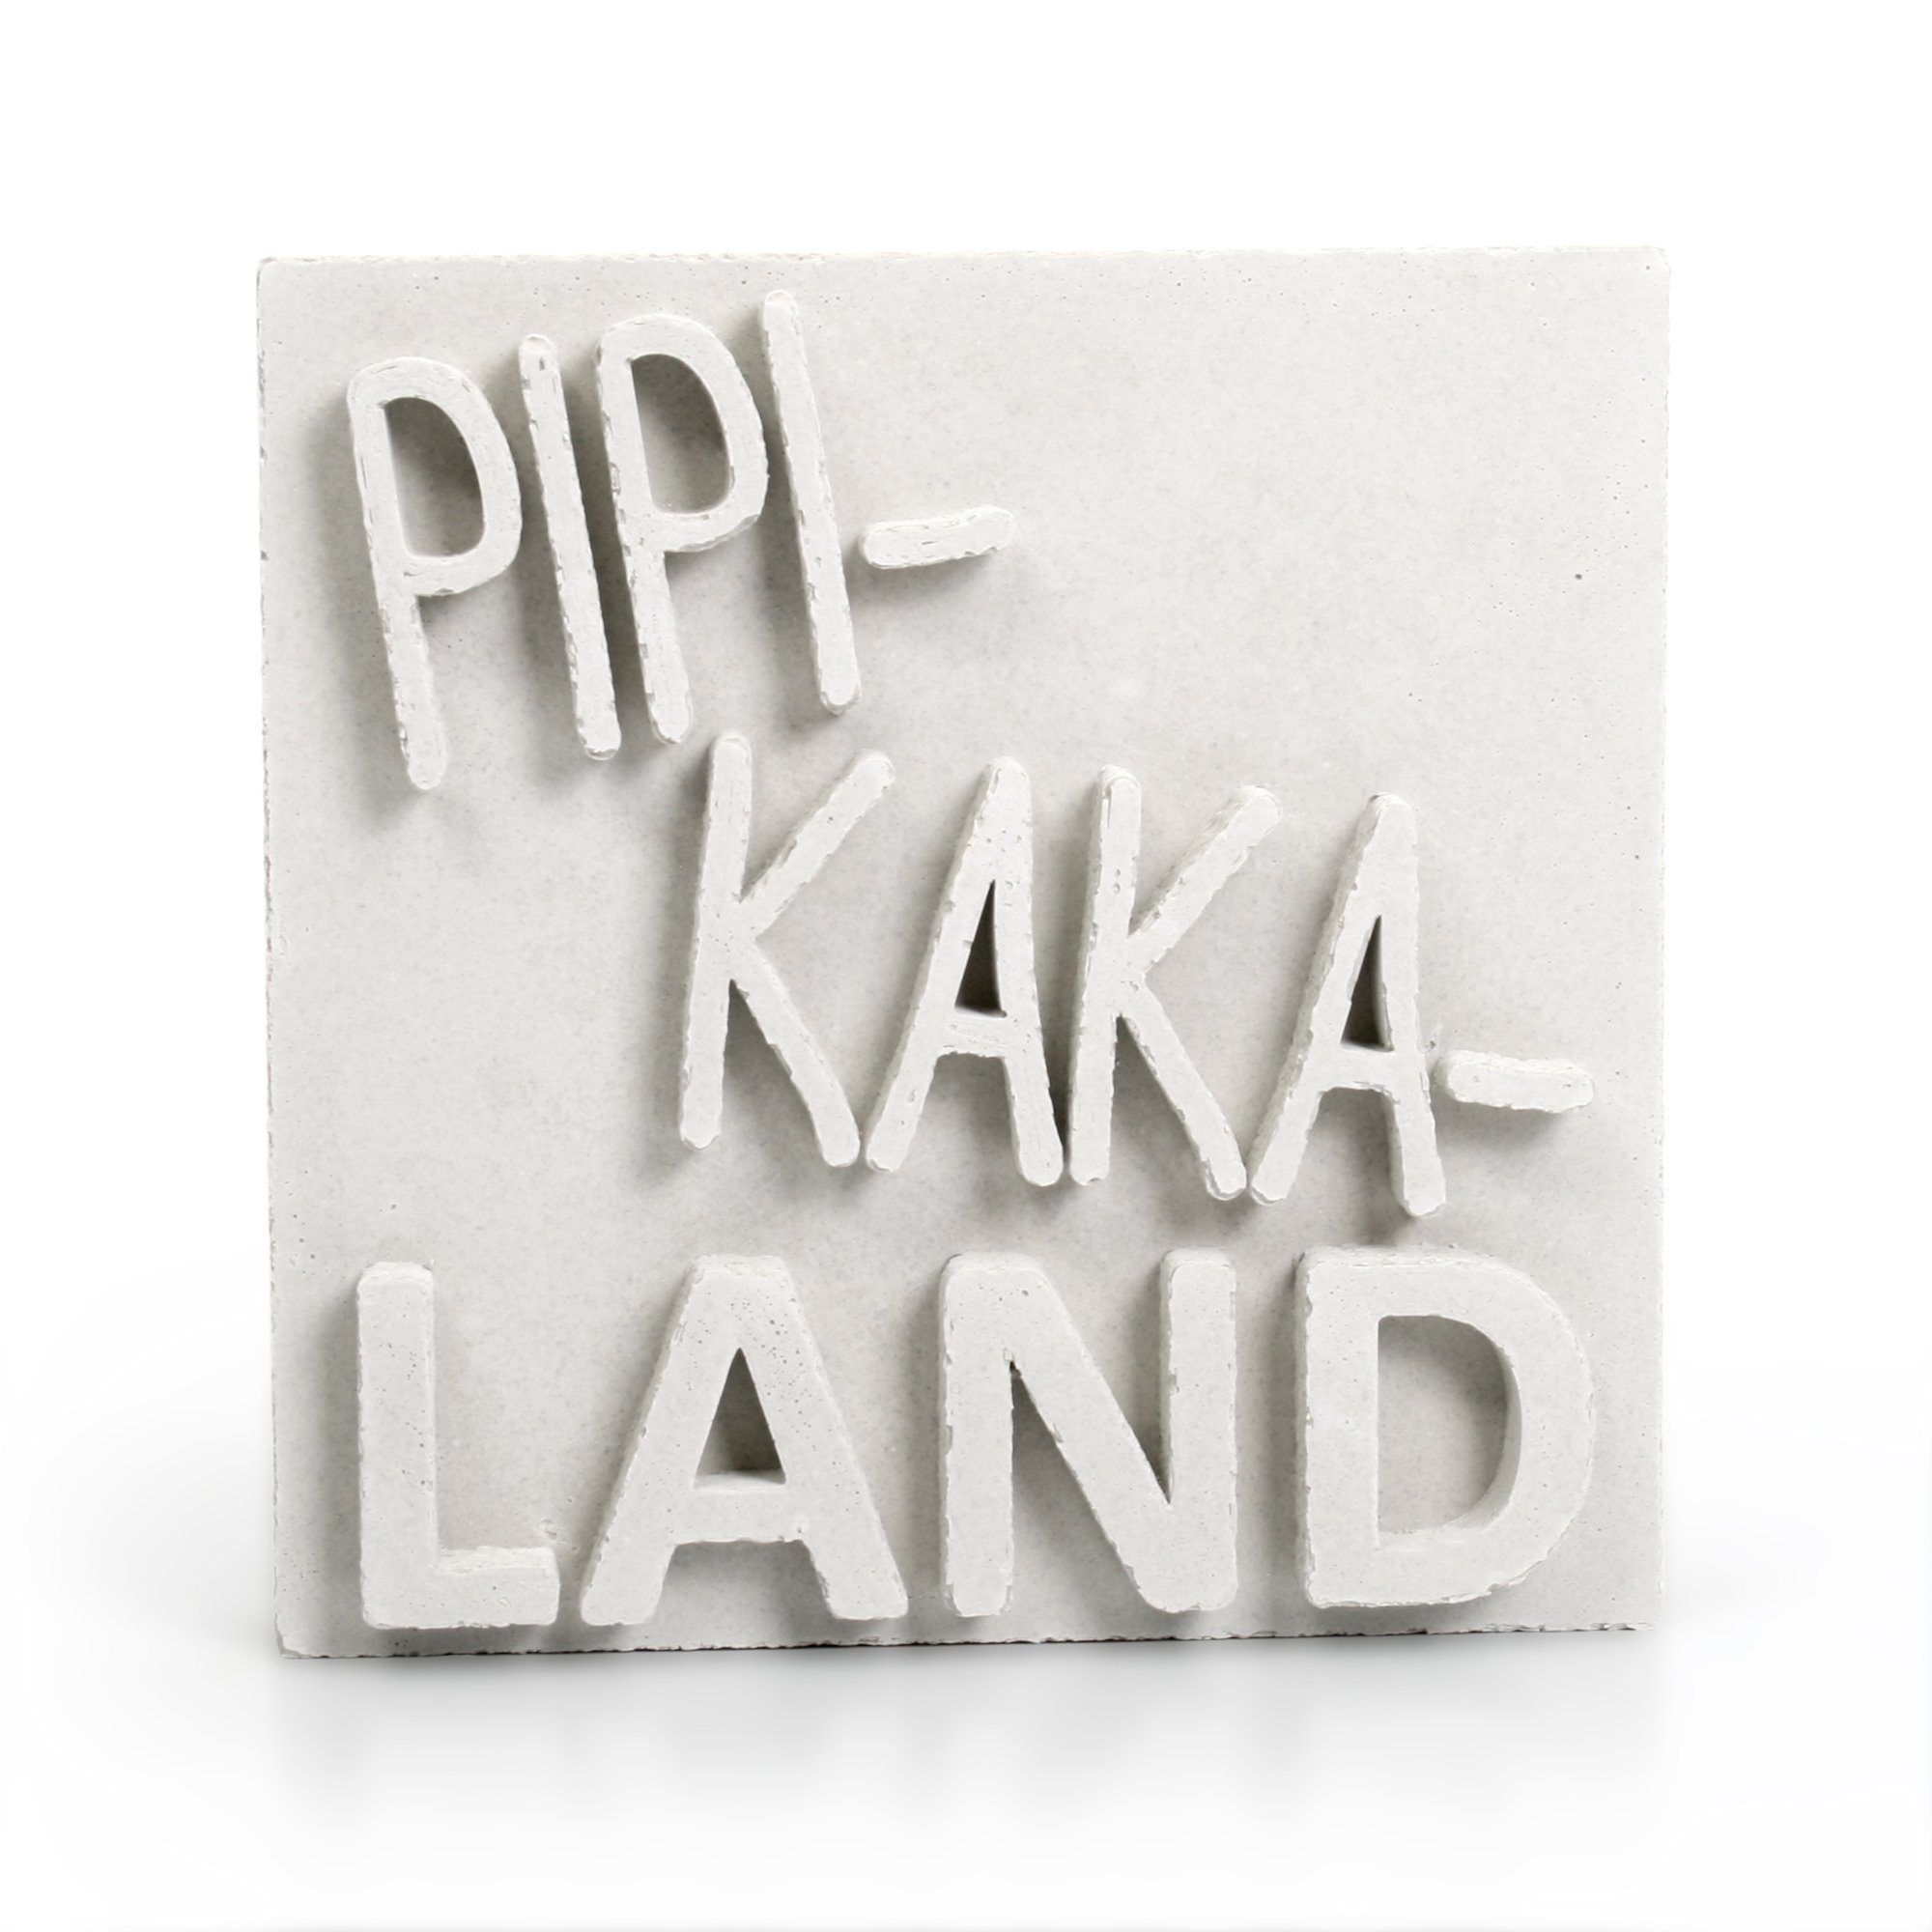 Kreative Feder Deko-Schriftzug Dekorativer AUFSTELLER „PIPI-KAKA-LAND“ handgegossen aus Beton, jedes Einzelstück ein Unikat